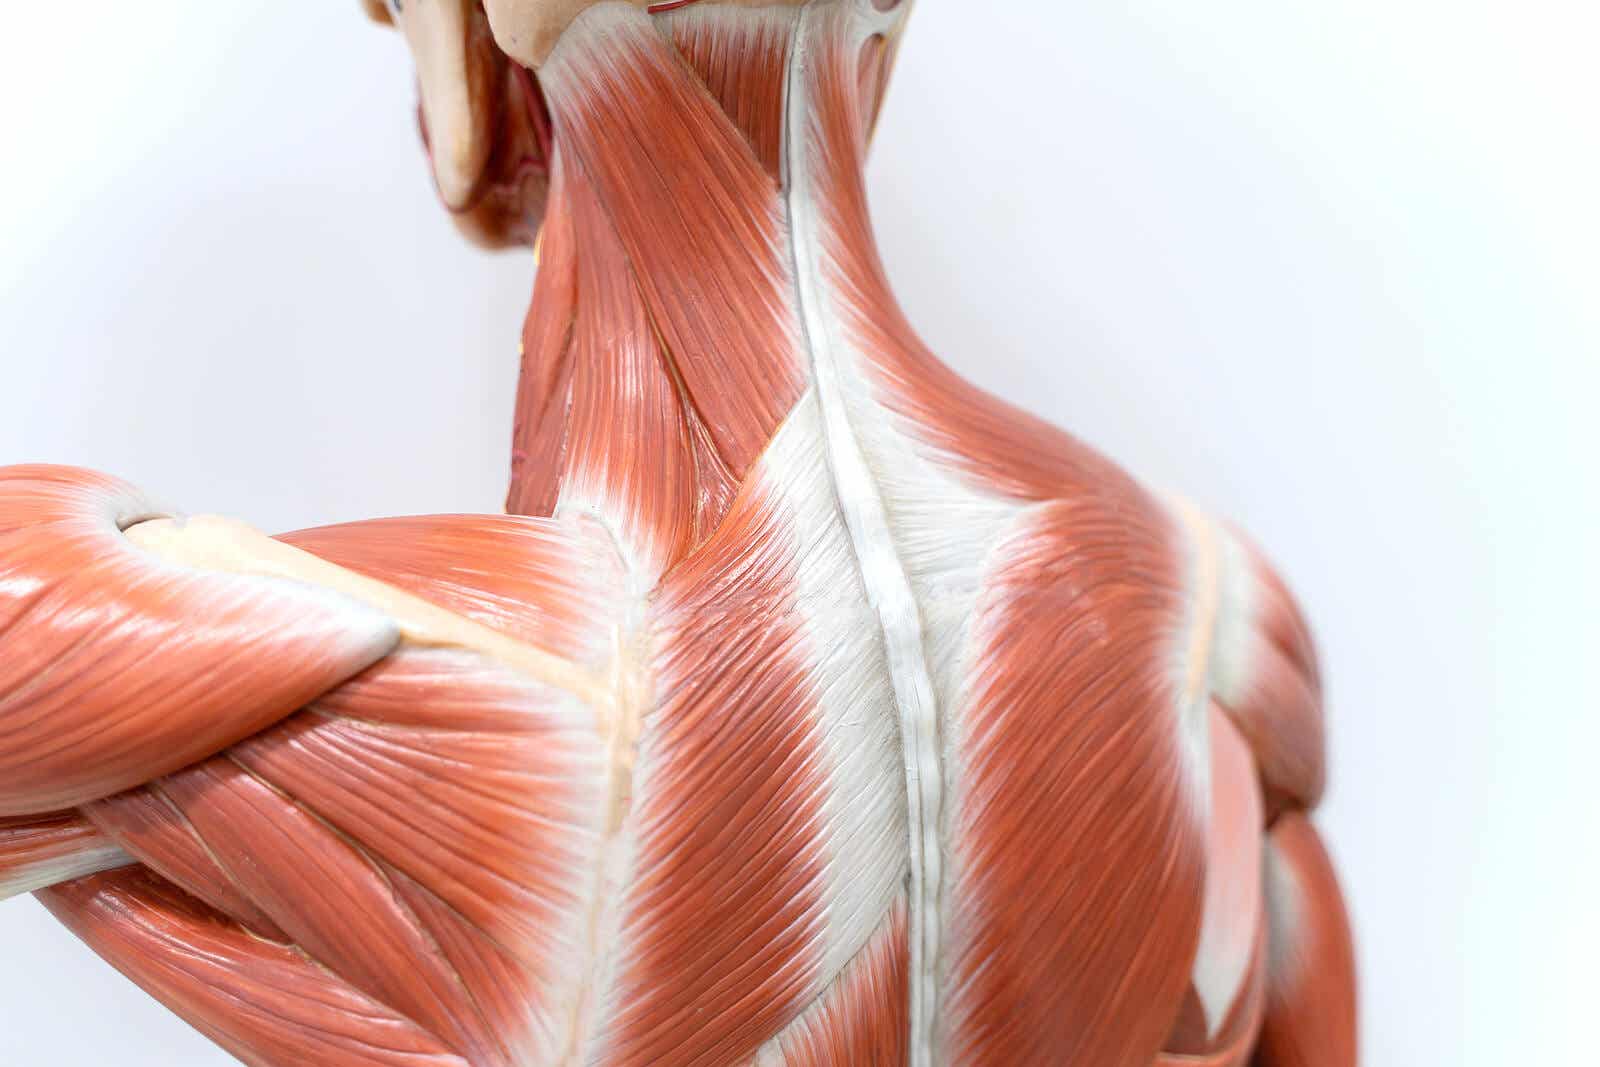 Schaubild der hinteren Muskulatur